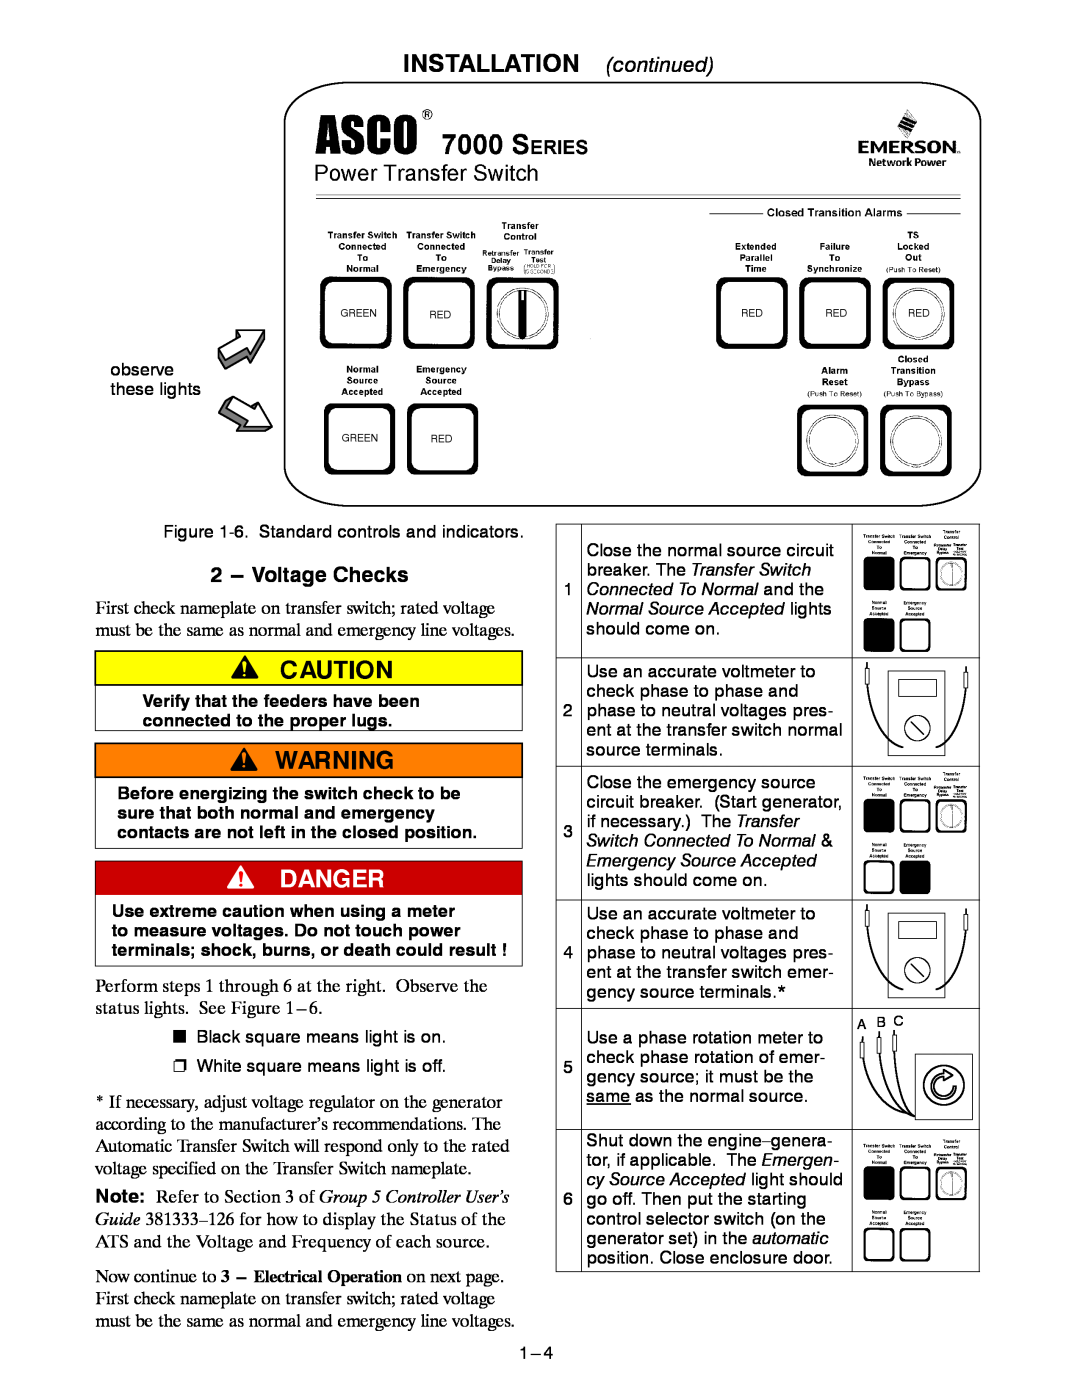 Emerson E-DESIGN 150-400A manual Voltage Checks, INSTALLATION continued 